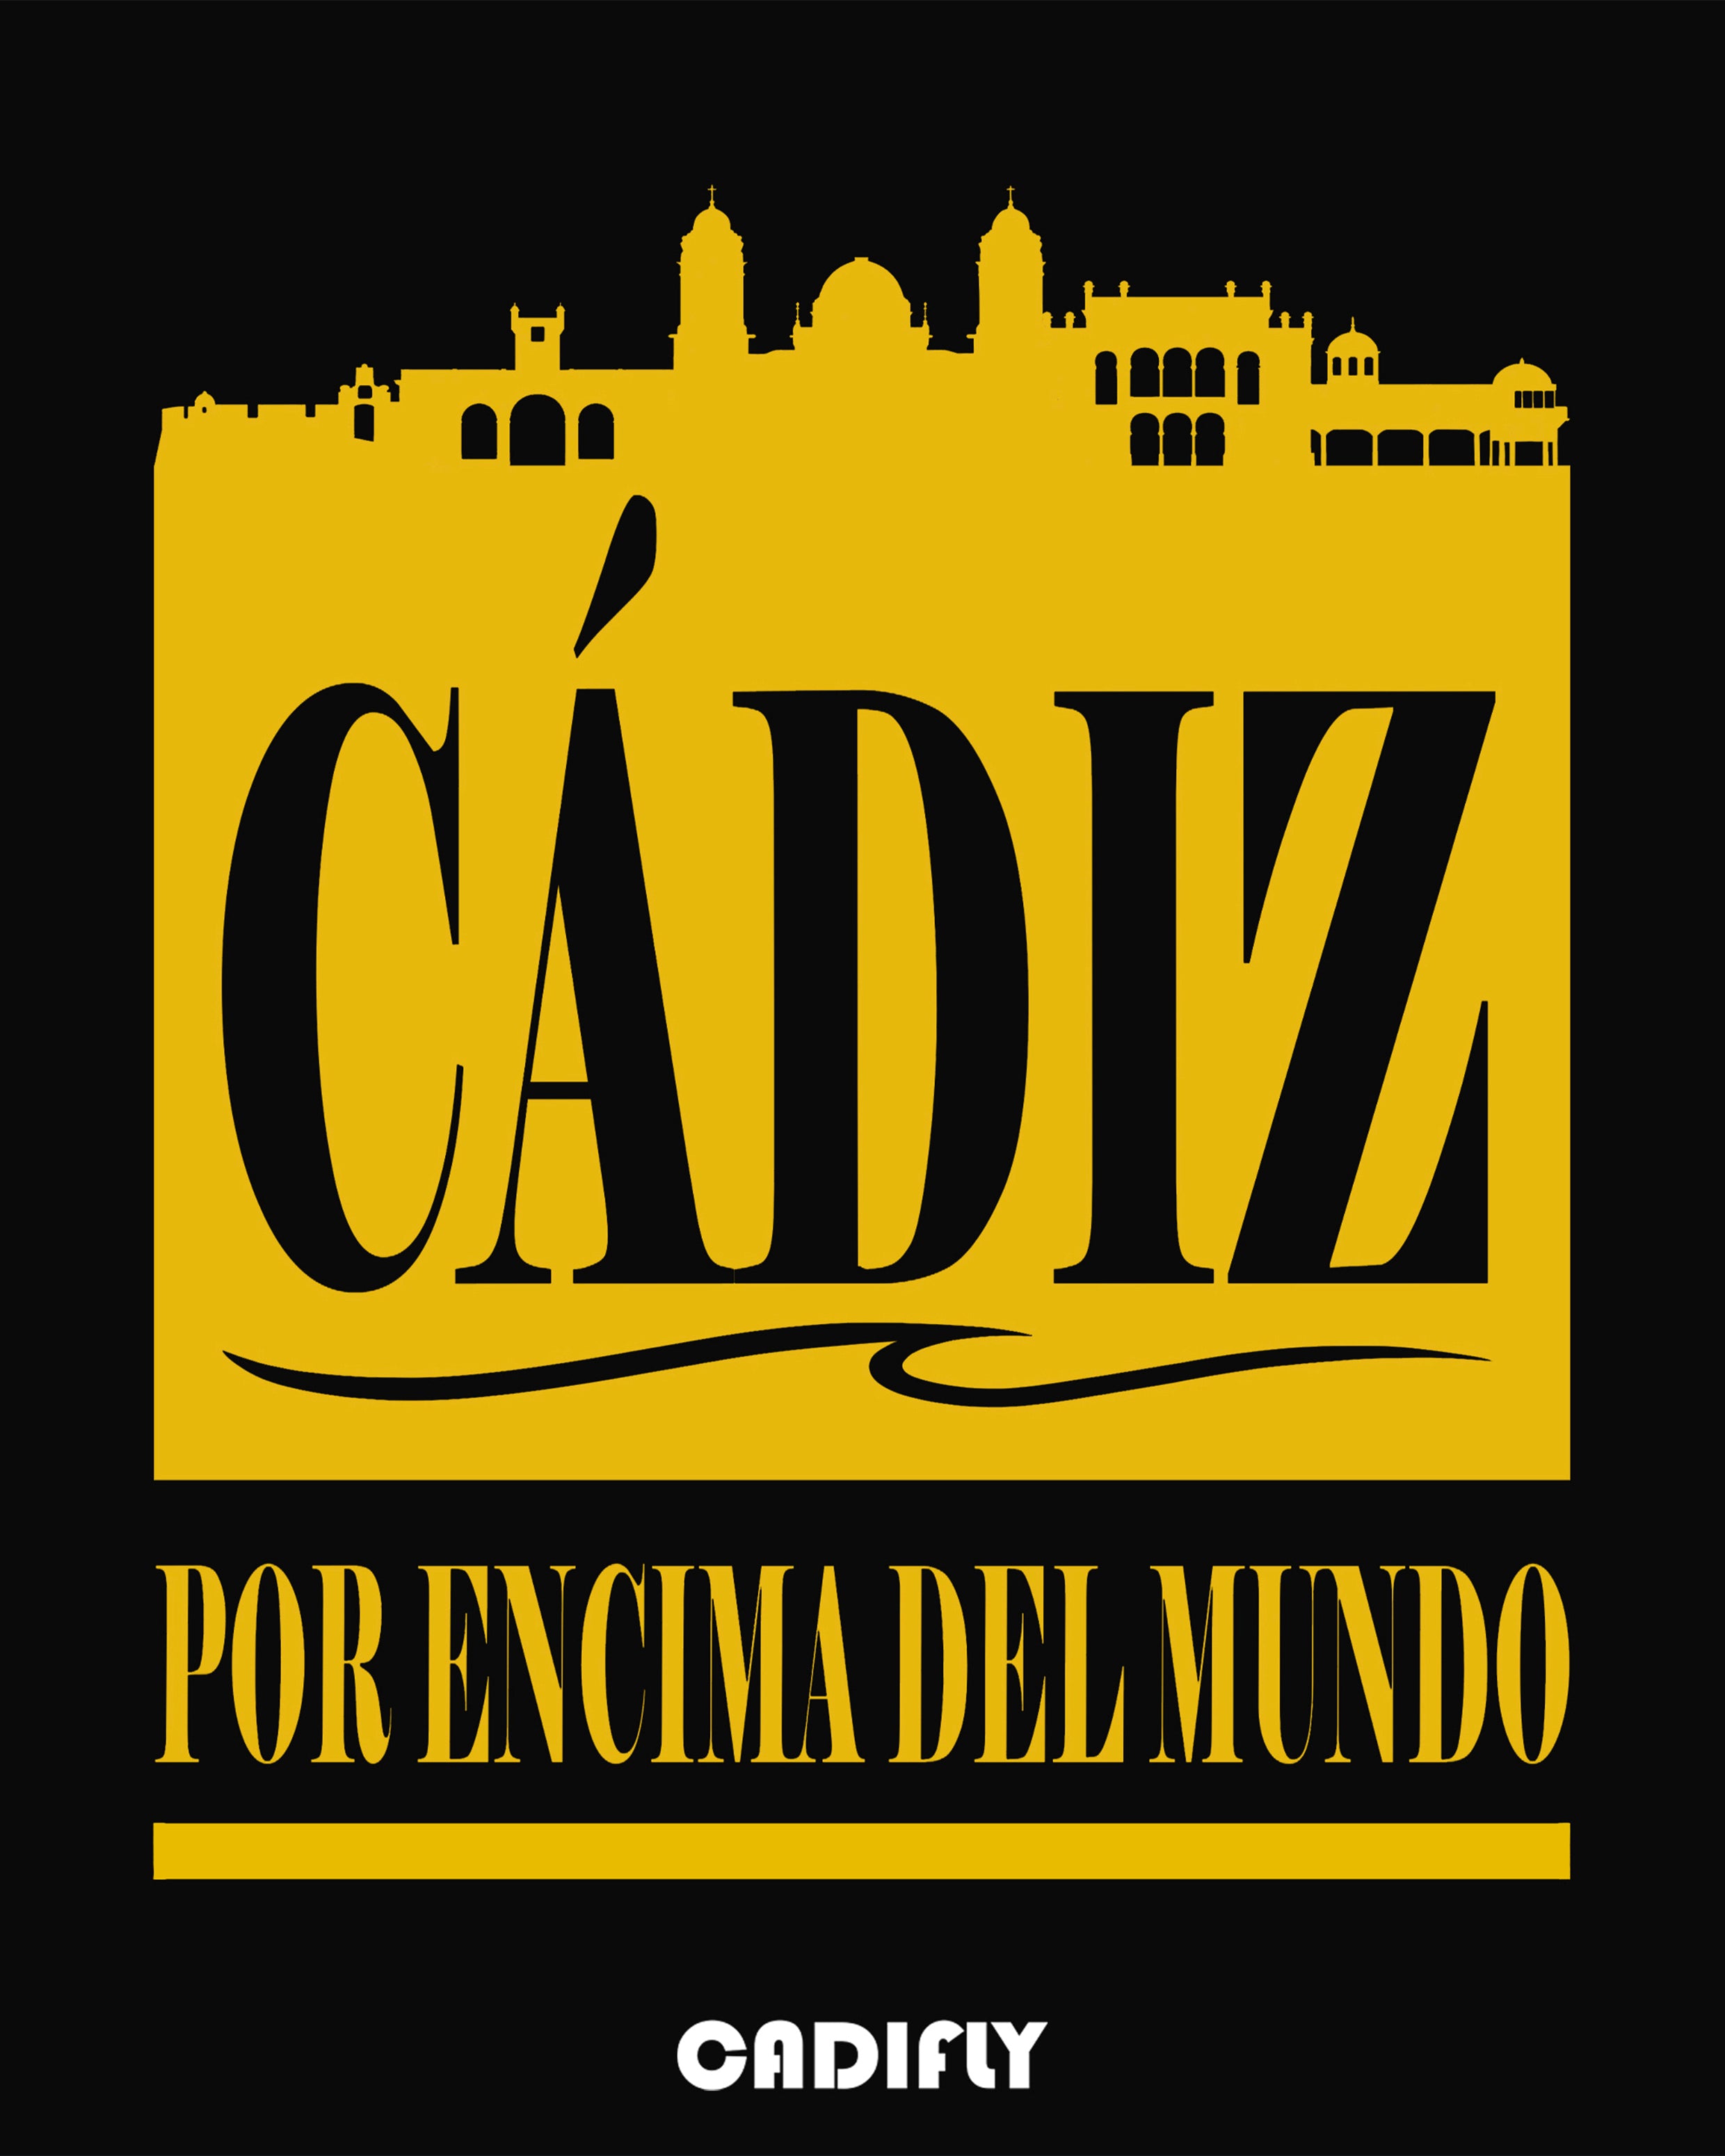 Diseño de Cadiz la ciudad donde el arte y sus playas predominan